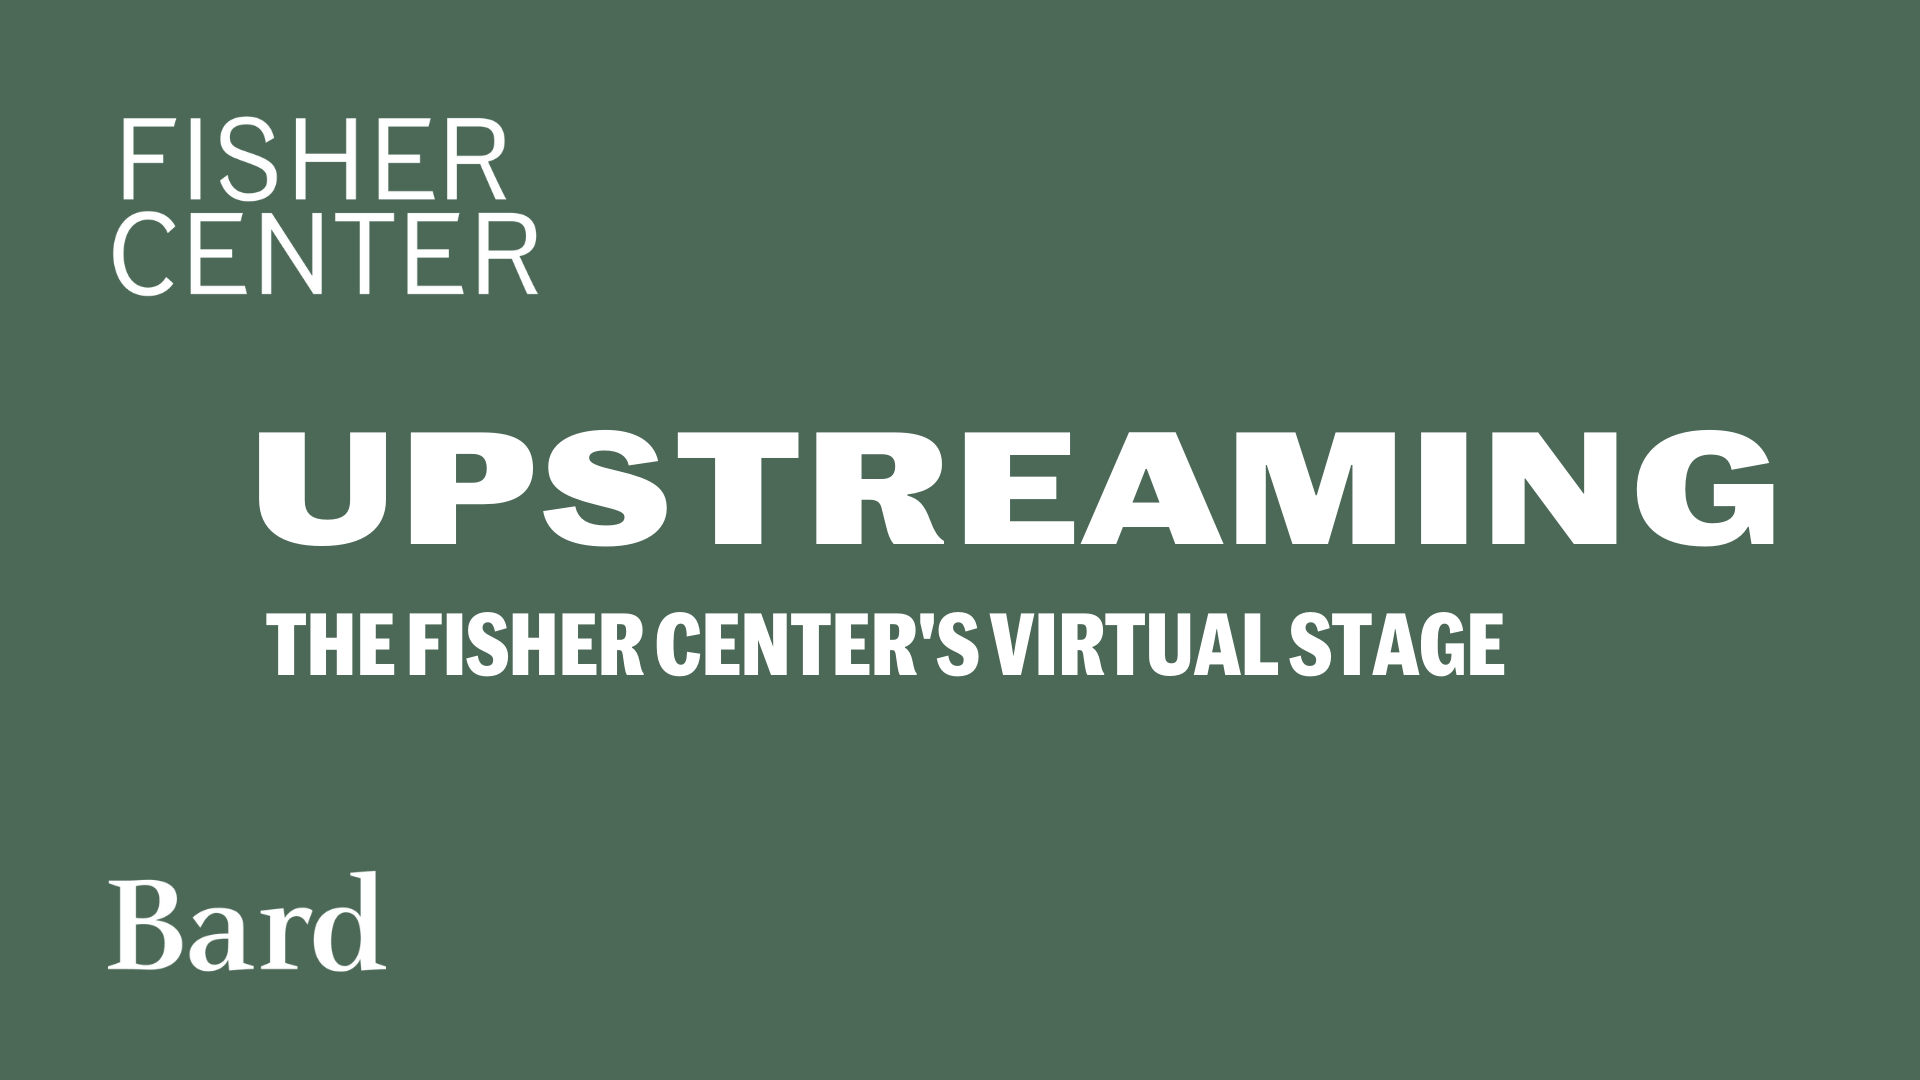 Visit https://fishercenter.bard.edu/events/UPS-together-apart/